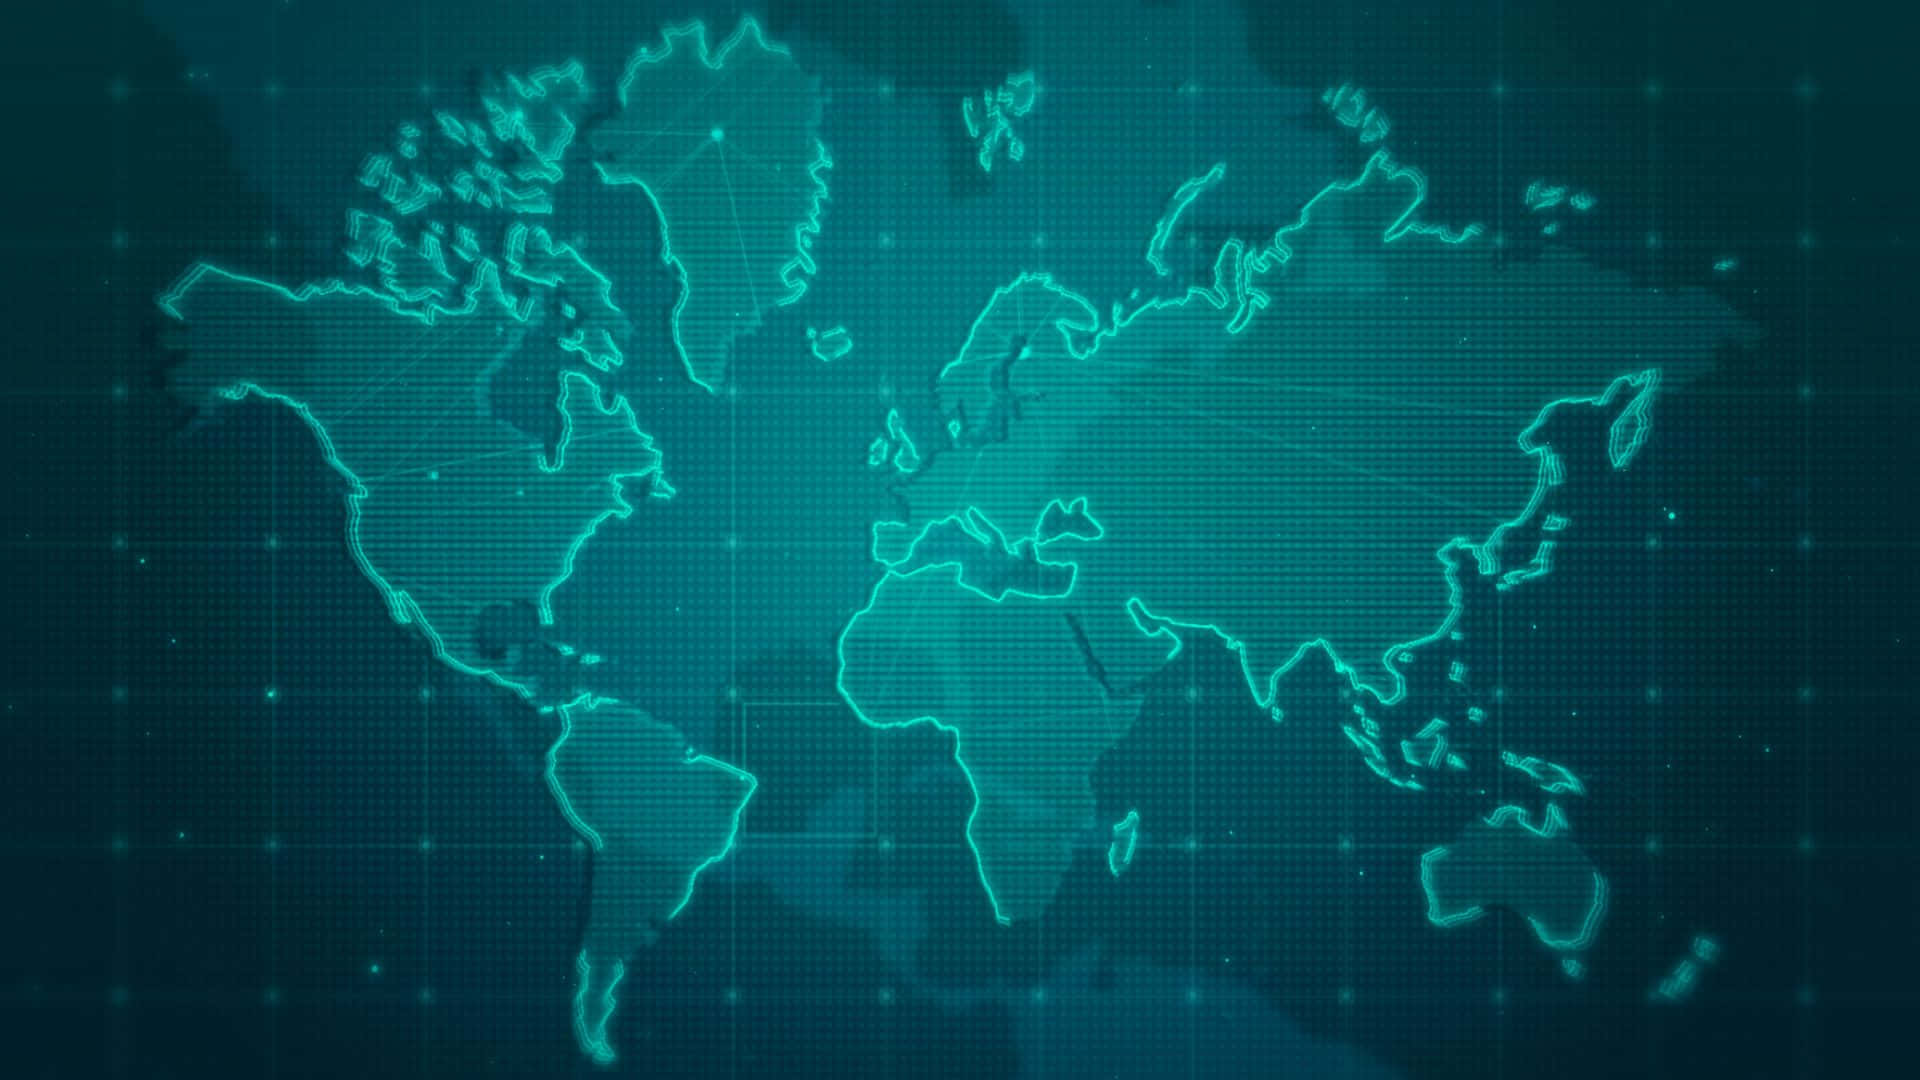 Exquisitofondo De Pantalla Digital De Mapa Mundial